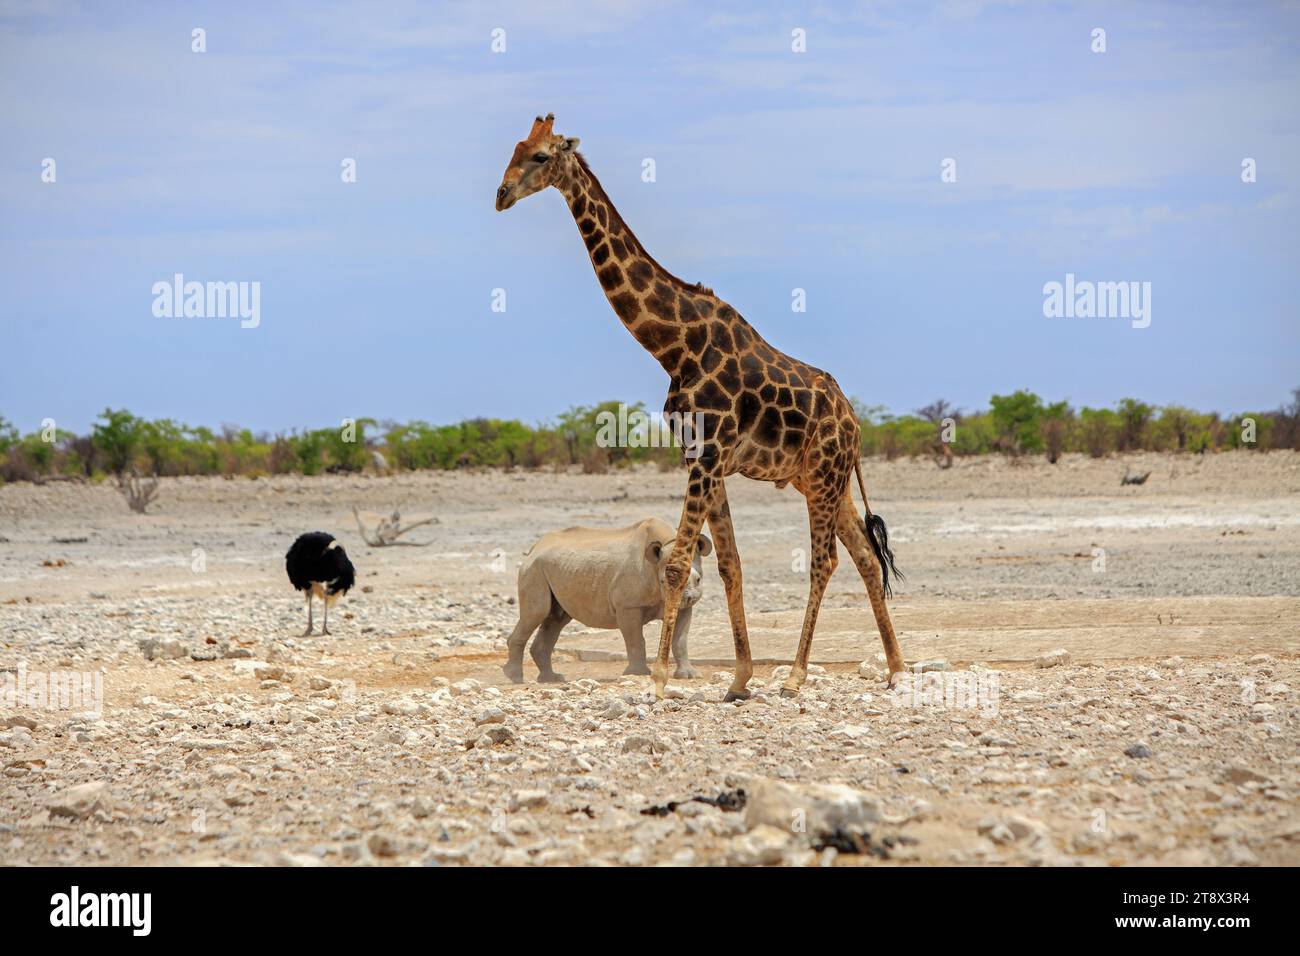 Ein schwarzer Rhinozerus, der hinter einer dultigen Giraffe mit einem männlichen schwarzen Strauß im Hintergrund vor einem natürlichen blauen, hellen Himmel geht Stockfoto